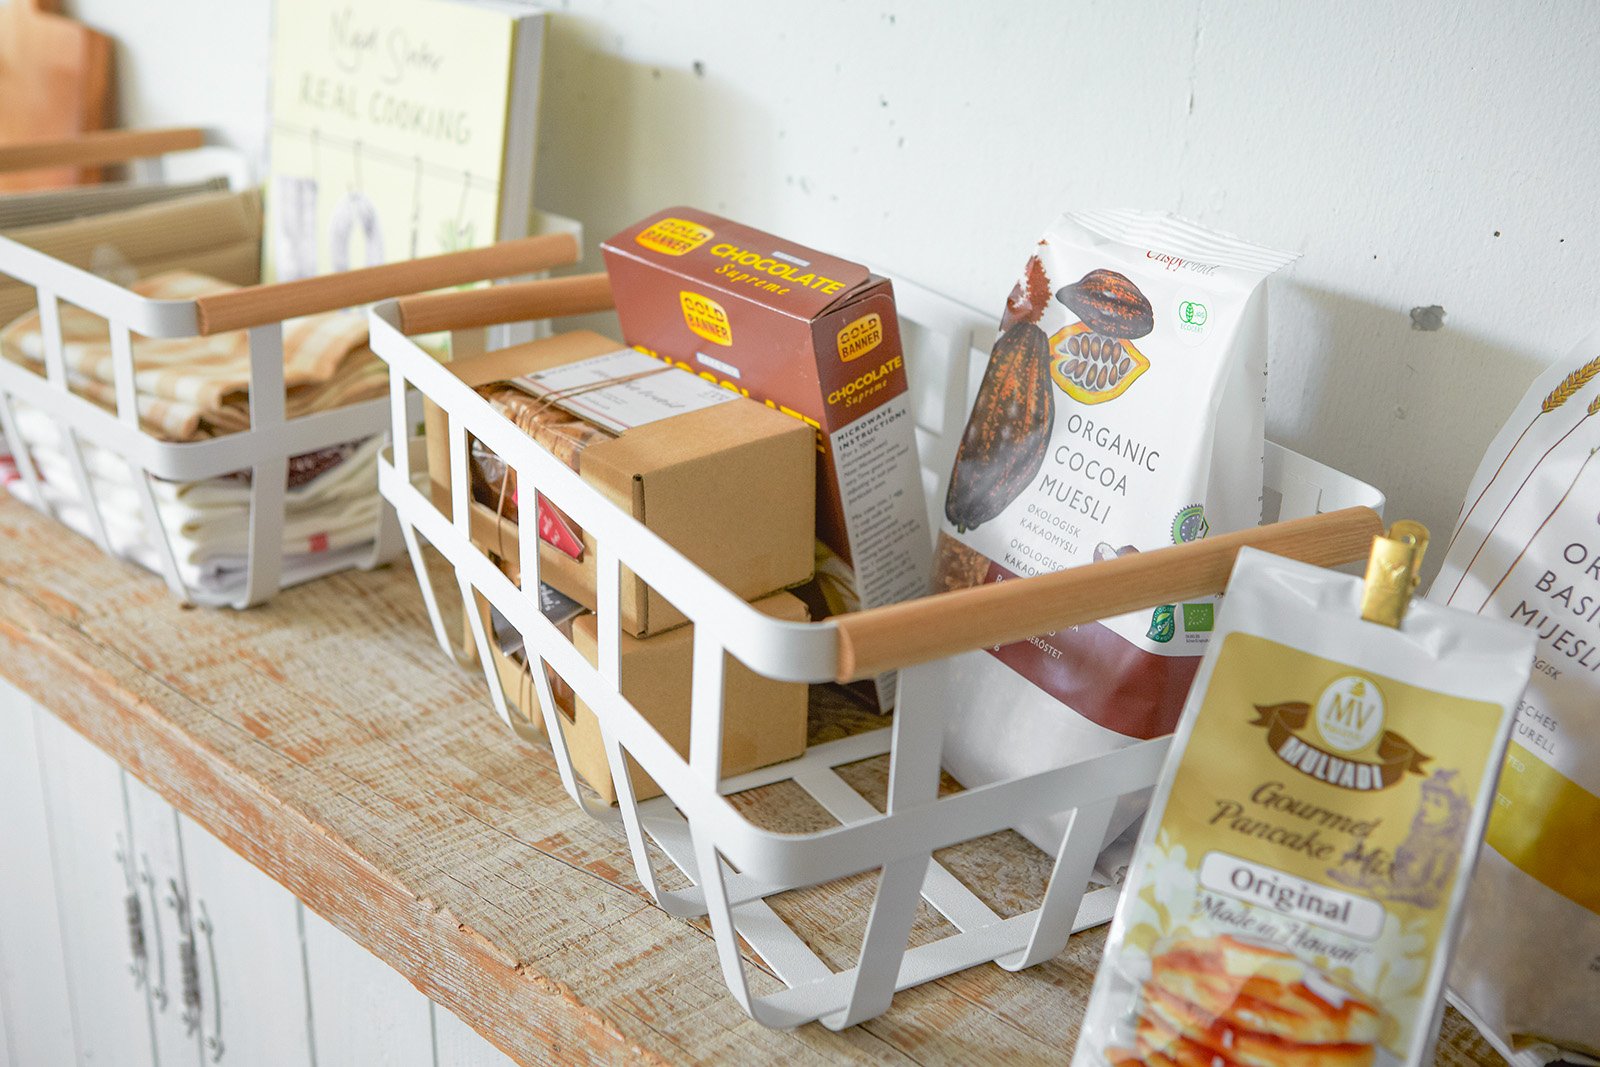 Yamazaki Home Storage Basket holding packaged foods. 